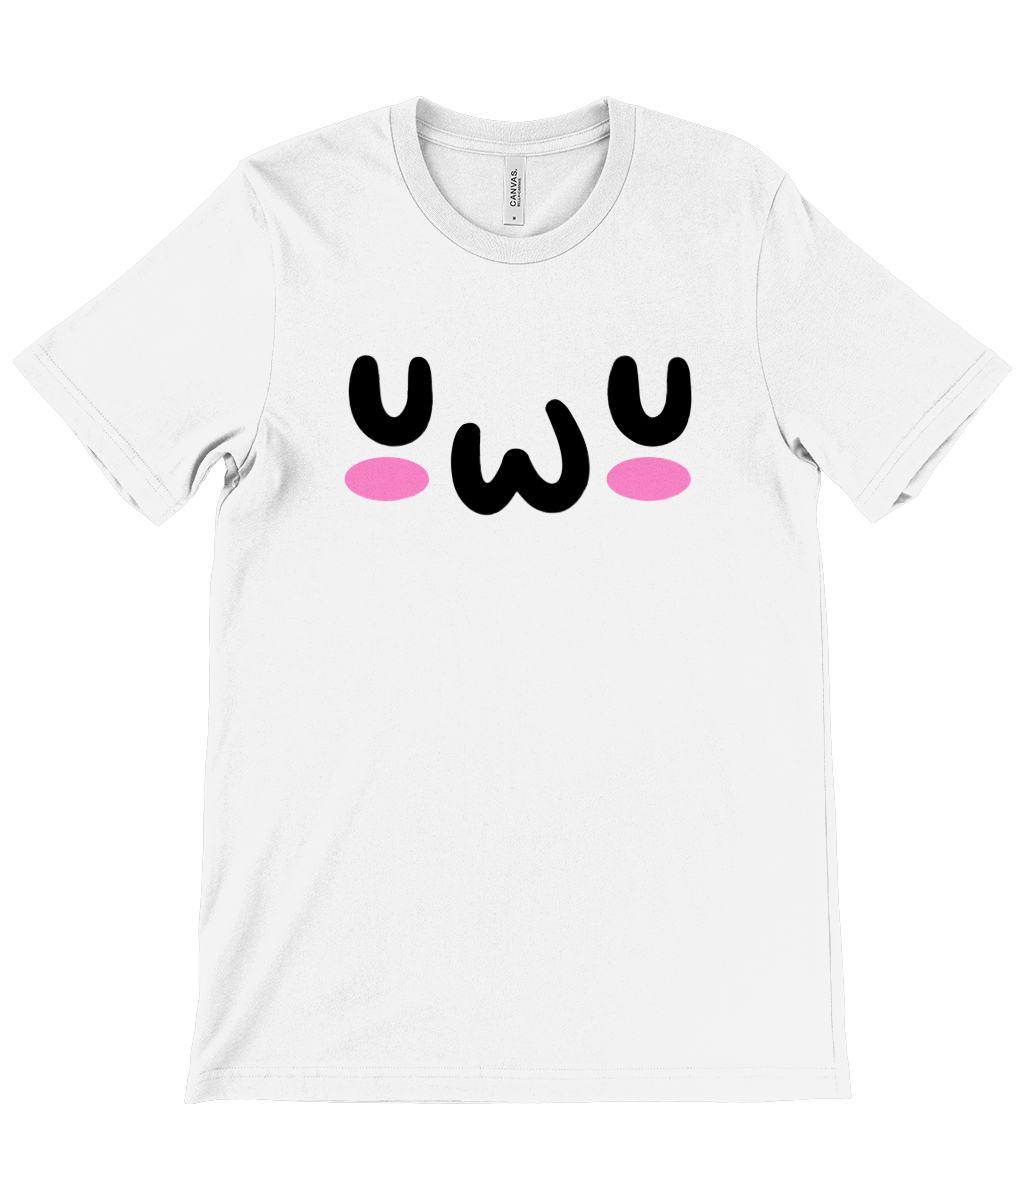 UWU Crew Neck T-Shirt